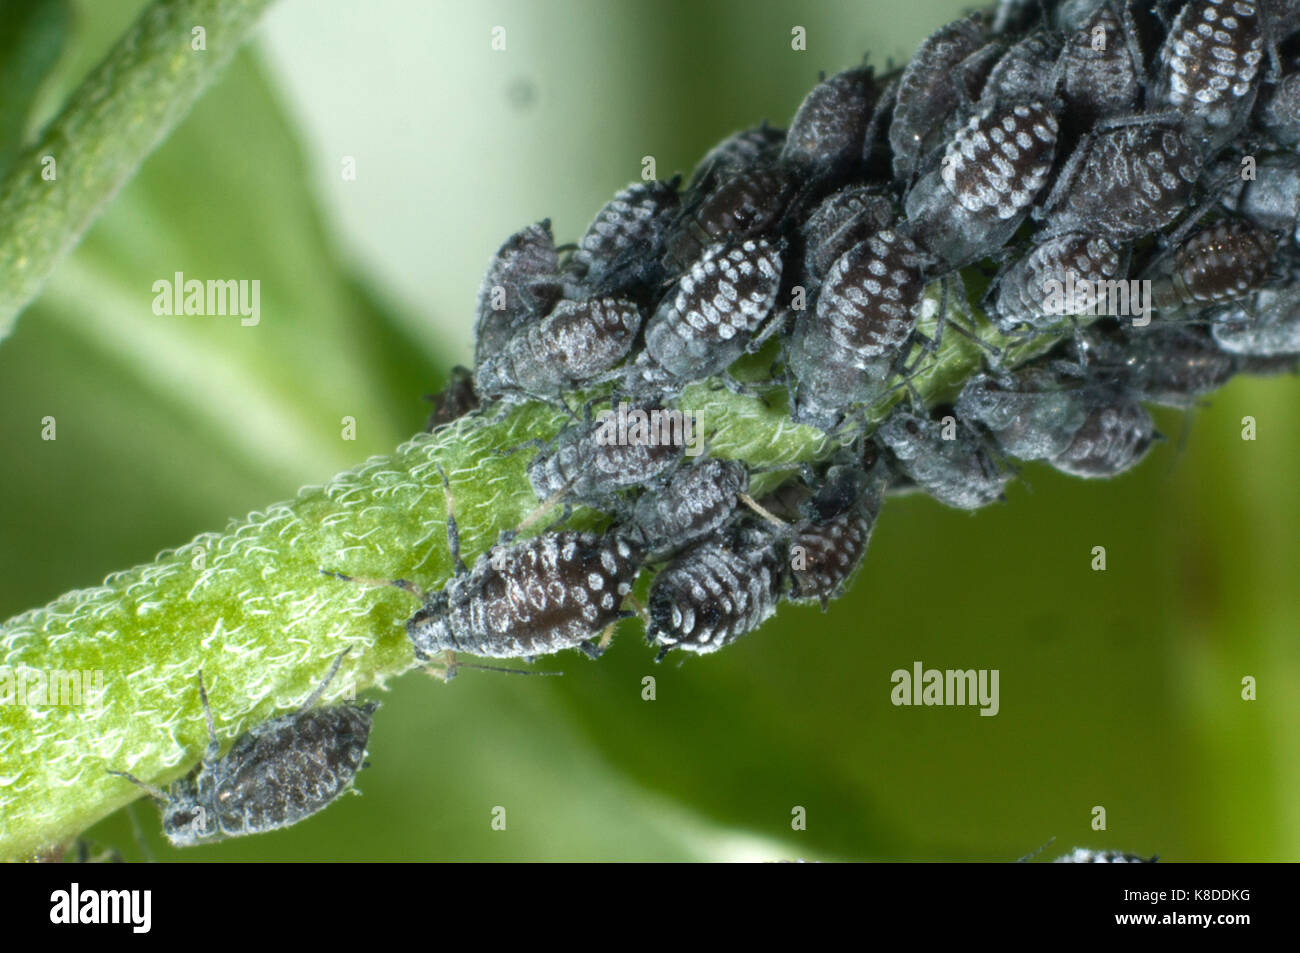 Colonie de pucerons Aphis willowherb cireux, epilobiaria, sur une espèce de mauvaises herbes, d'épilobe à feuilles larges, Epilobium montanum Banque D'Images